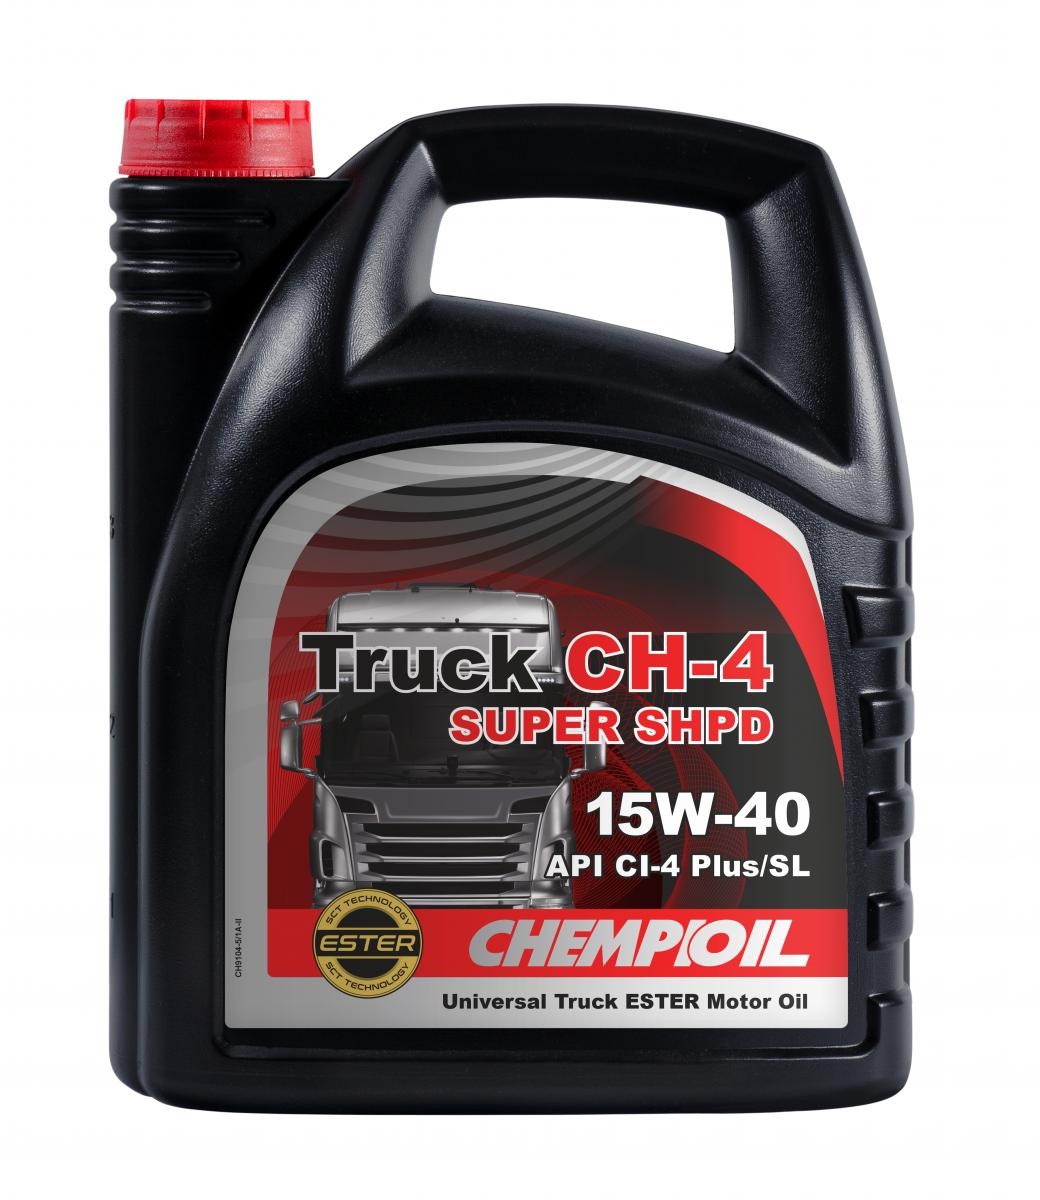 Kaufen Sie Auto Öl CHEMPIOIL CH9104-5 Truck, SHPD Super CH-4 15W-40, 5l